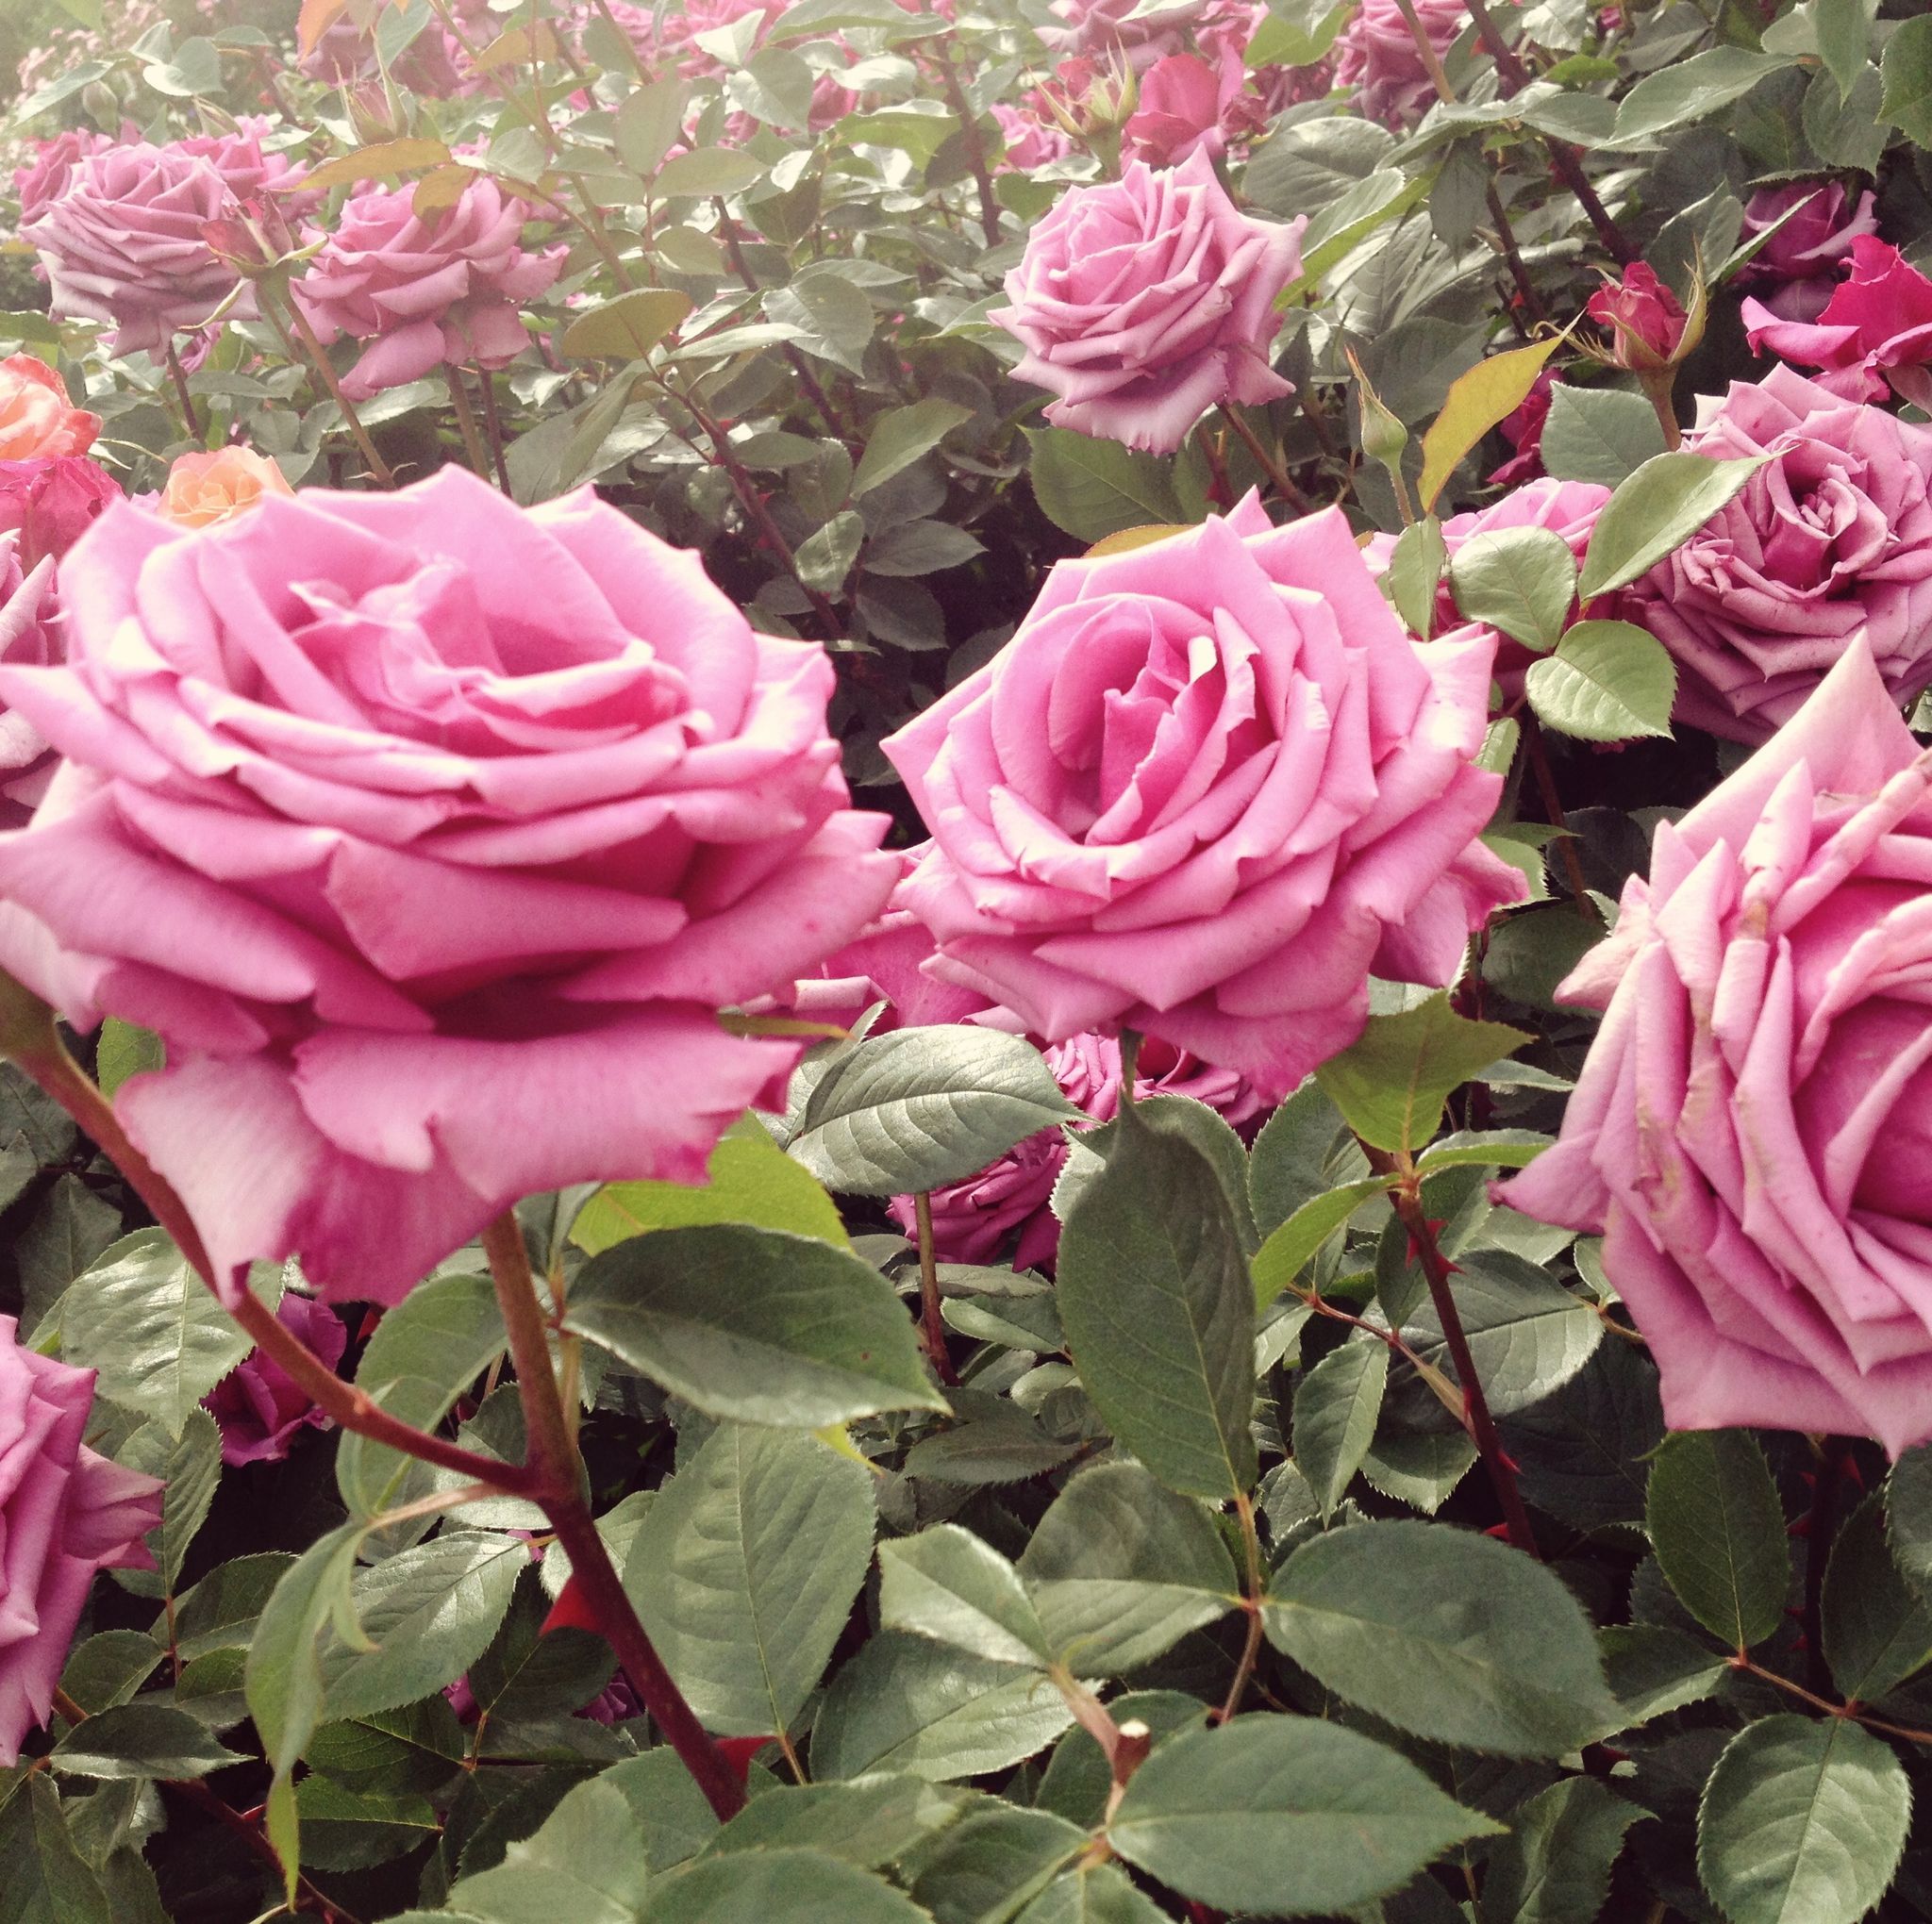 10 rose varieties for your garden